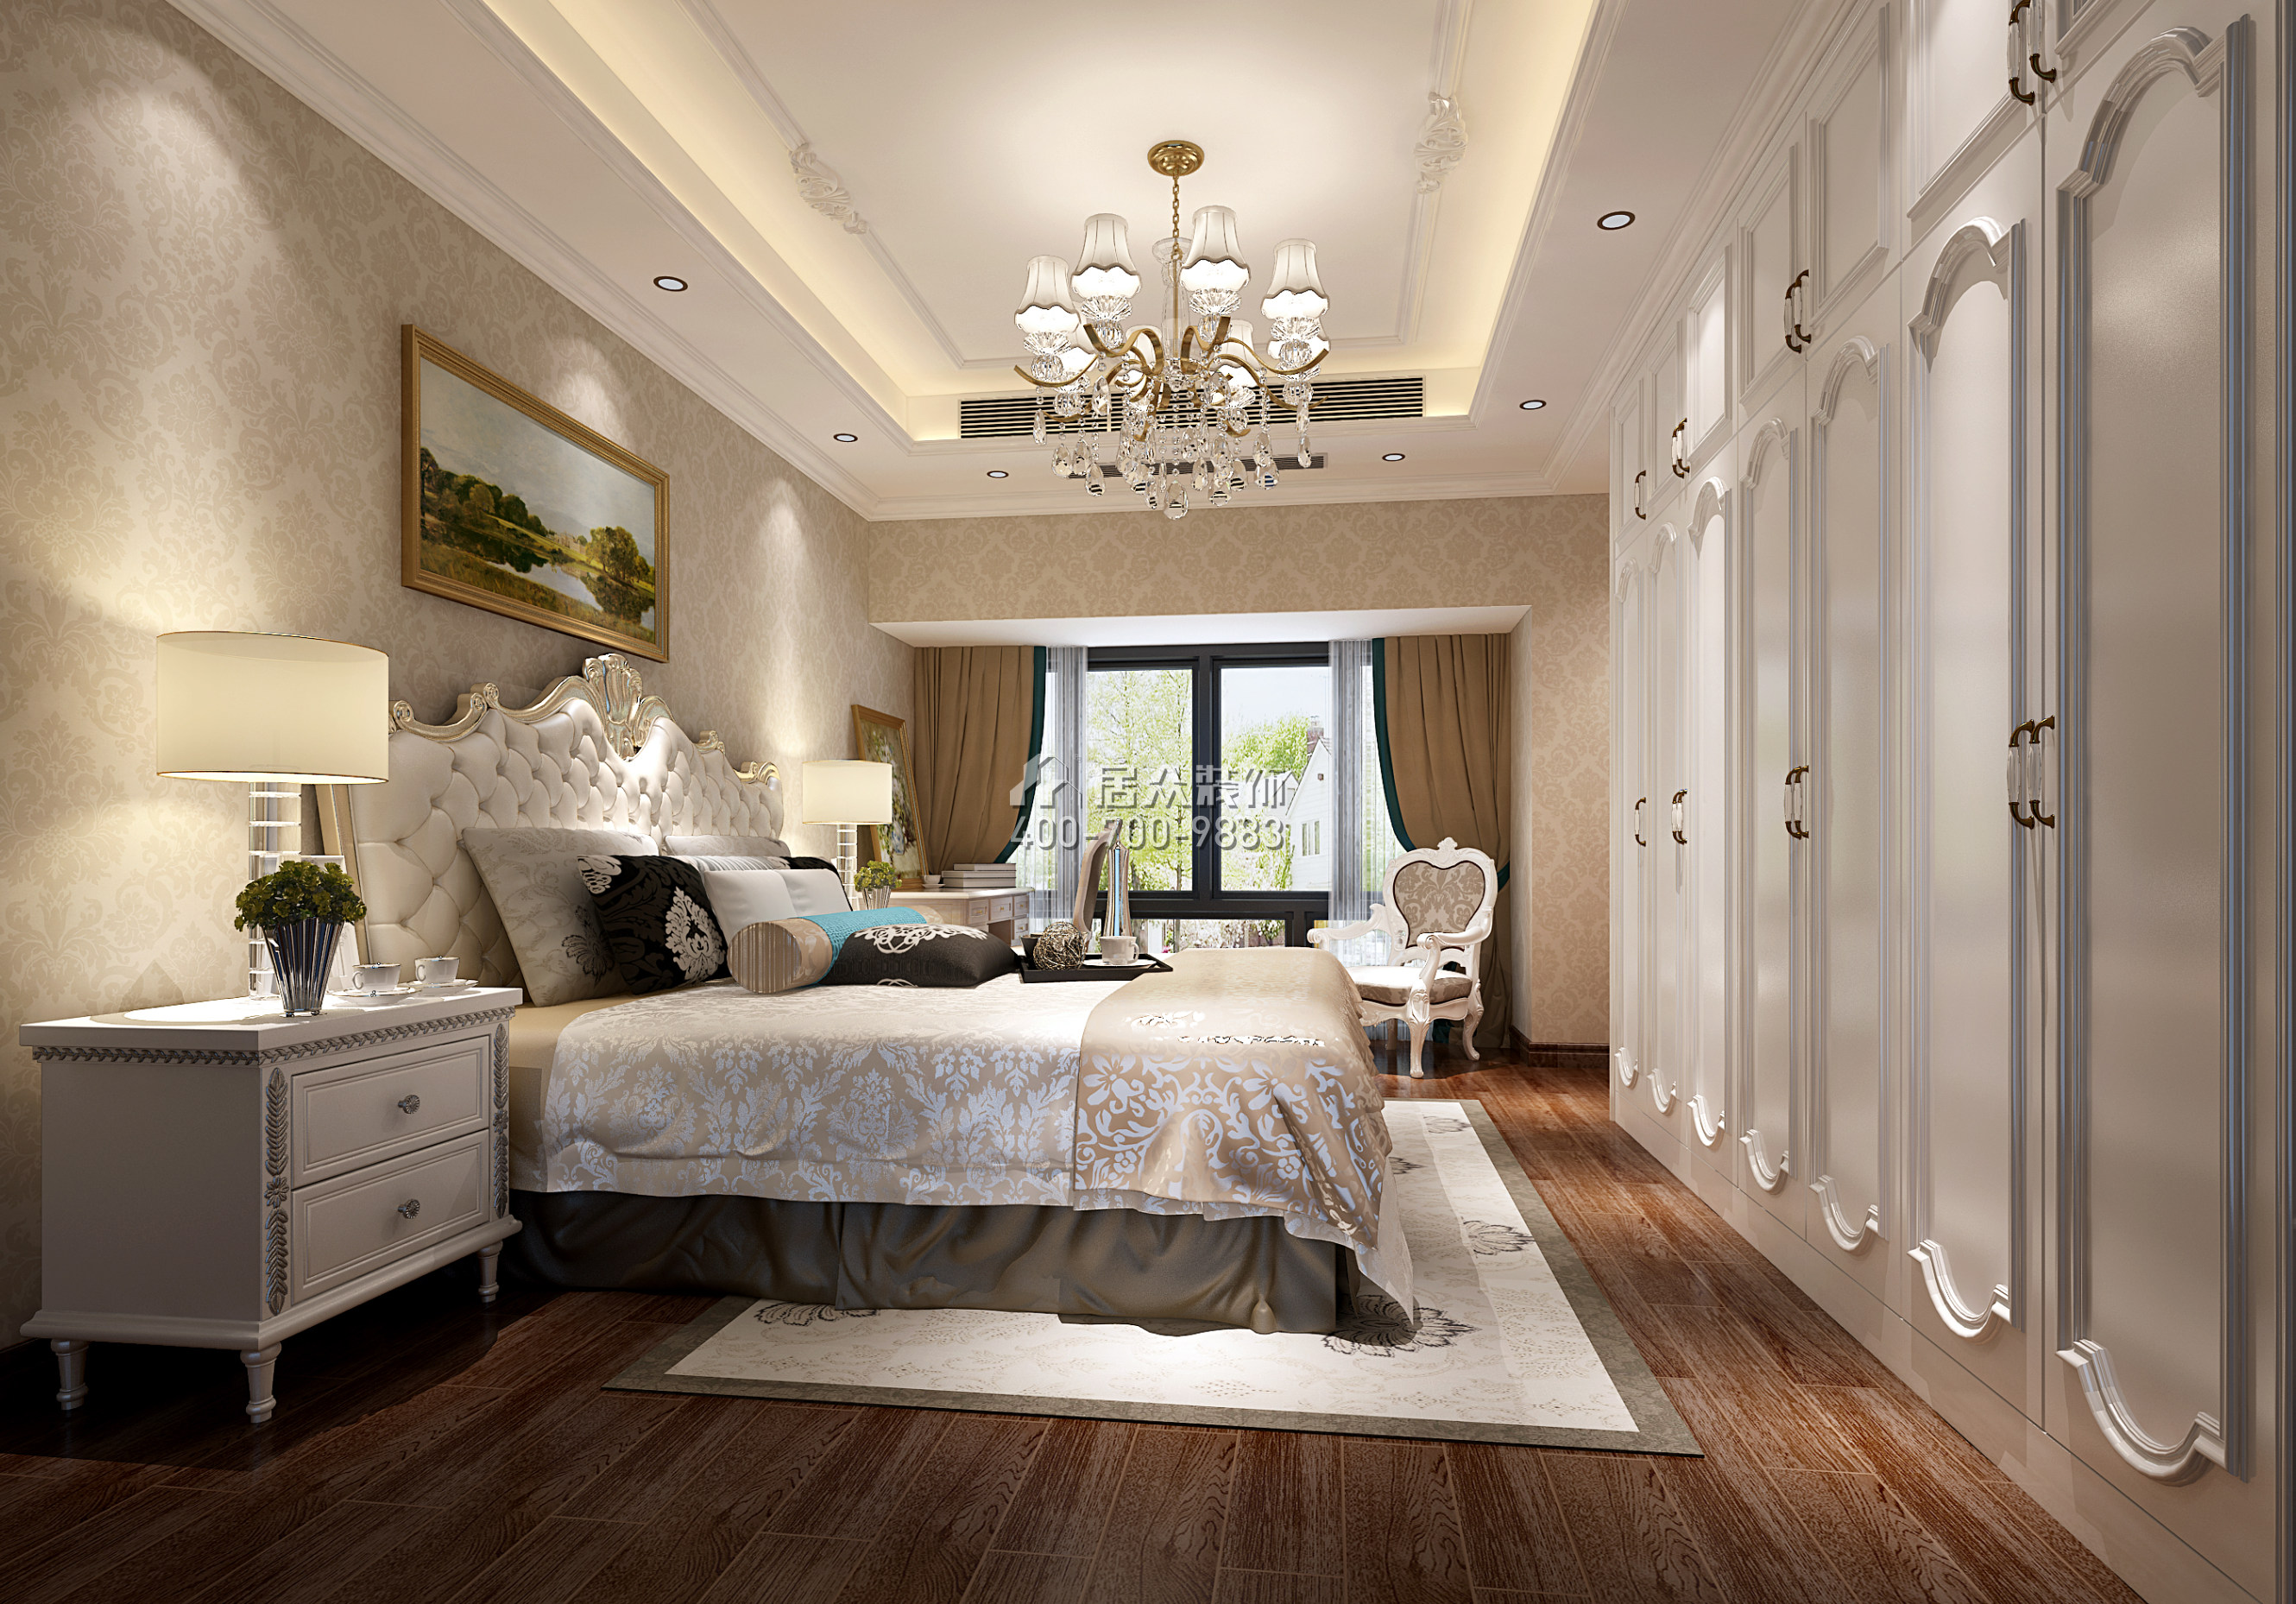 信义嘉御山100平方米欧式风格平层户型卧室装修效果图